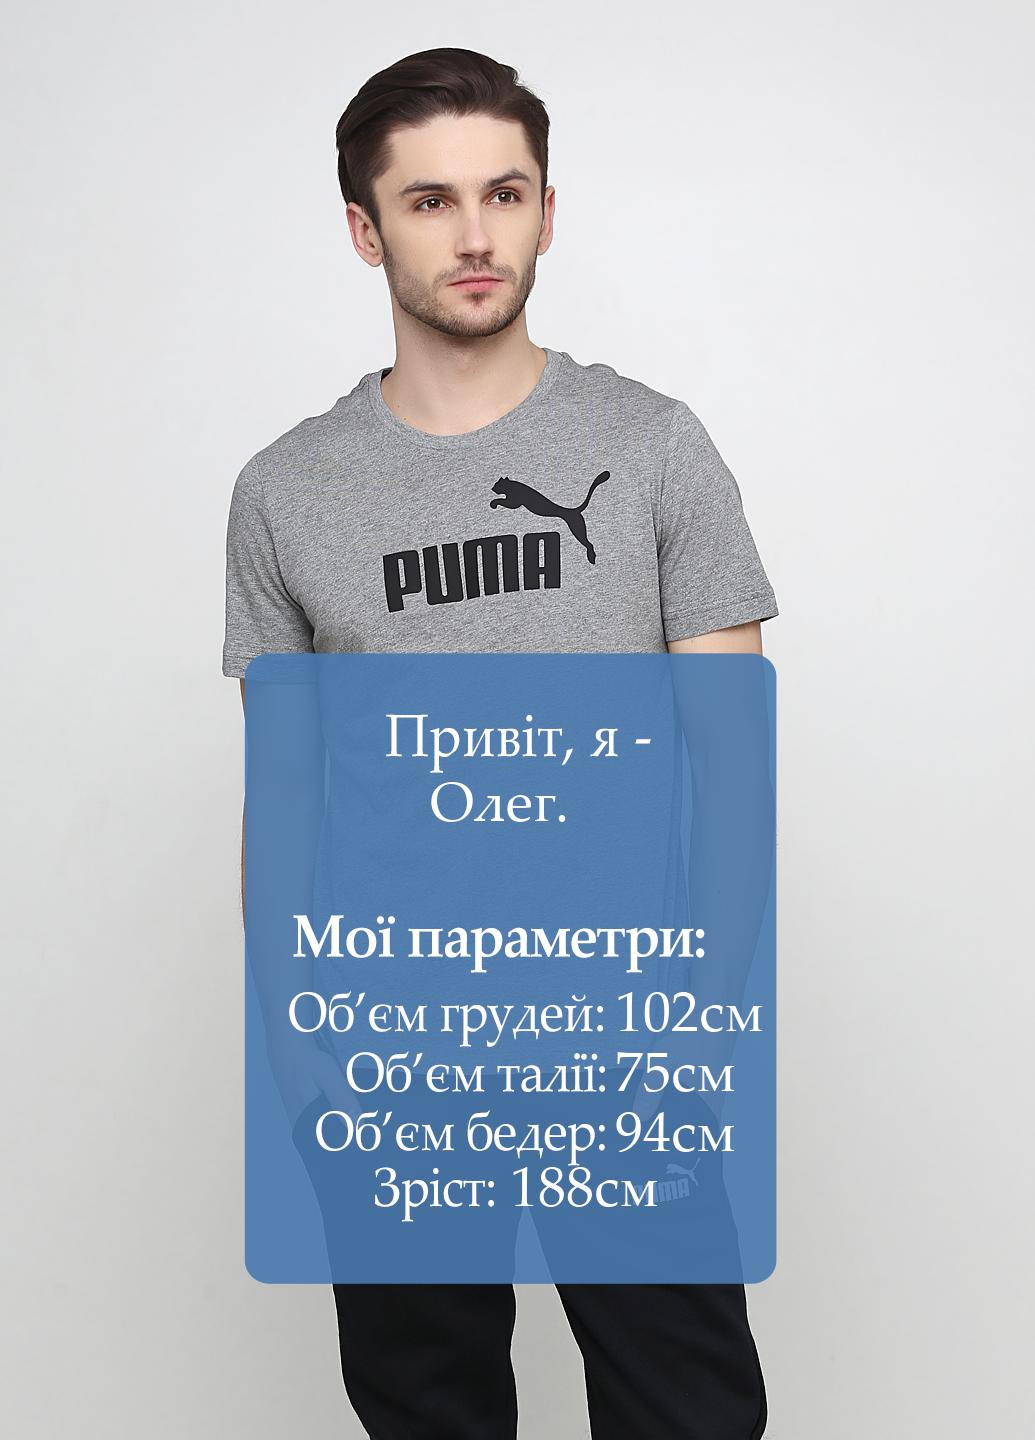 Серая футболка Puma